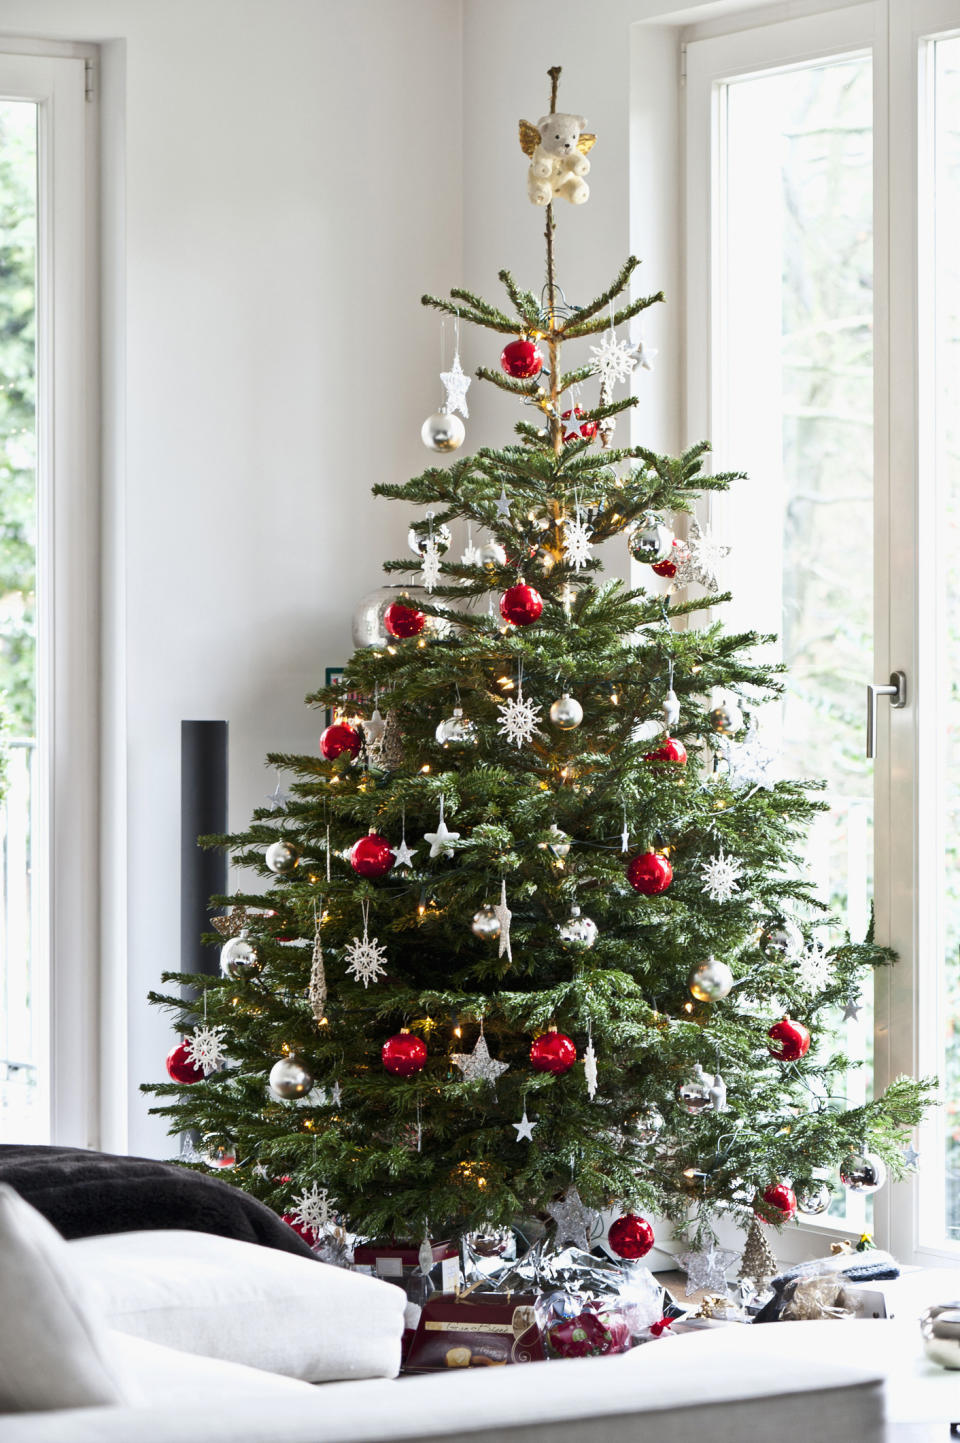 Mit dem richtigen Augenmaß steht der Weihnachtsbaum schnell gerade. (Bild: Getty Images / Arndt Haug / LOOK foto)